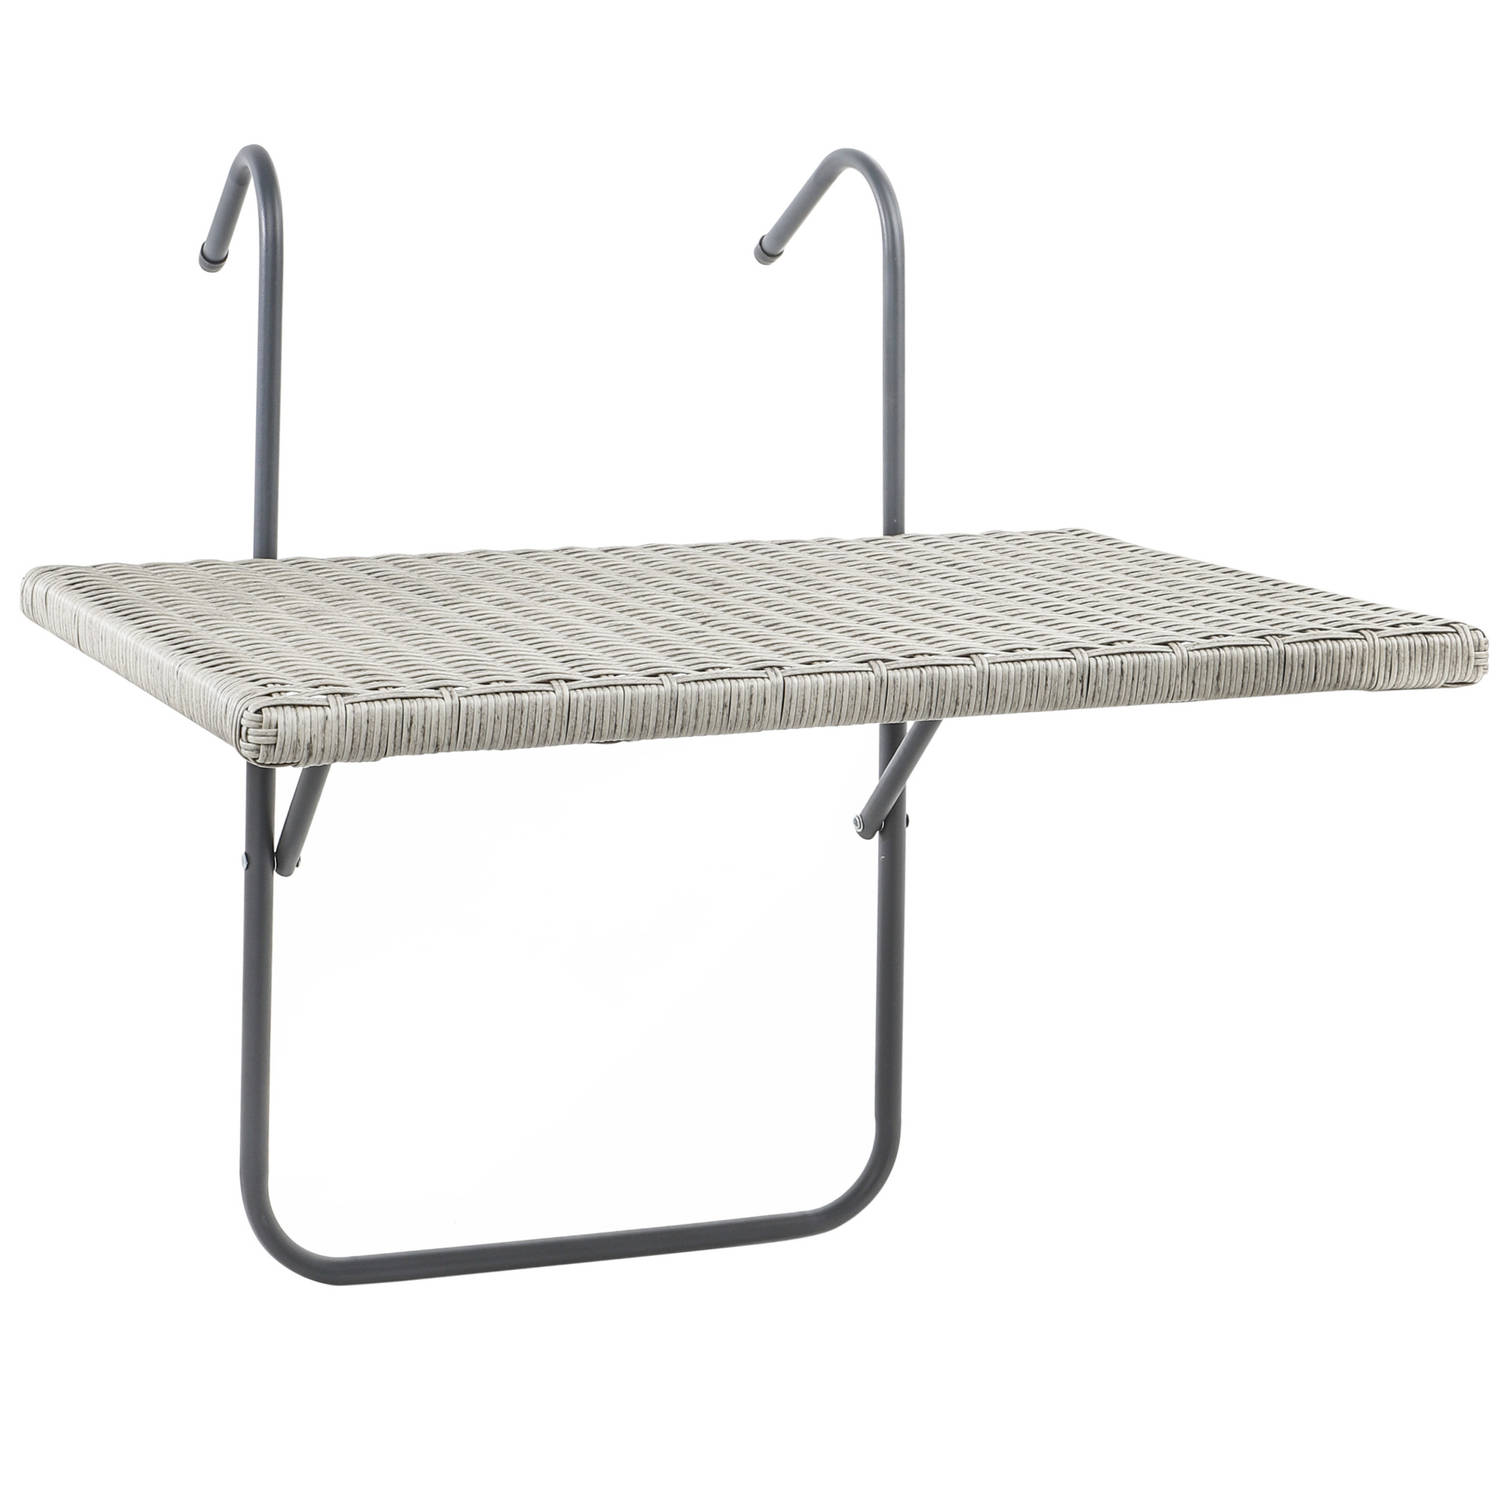 Balkontafel / tafeltje grijs voor aan het balkon 60 x 40 cm | Blokker